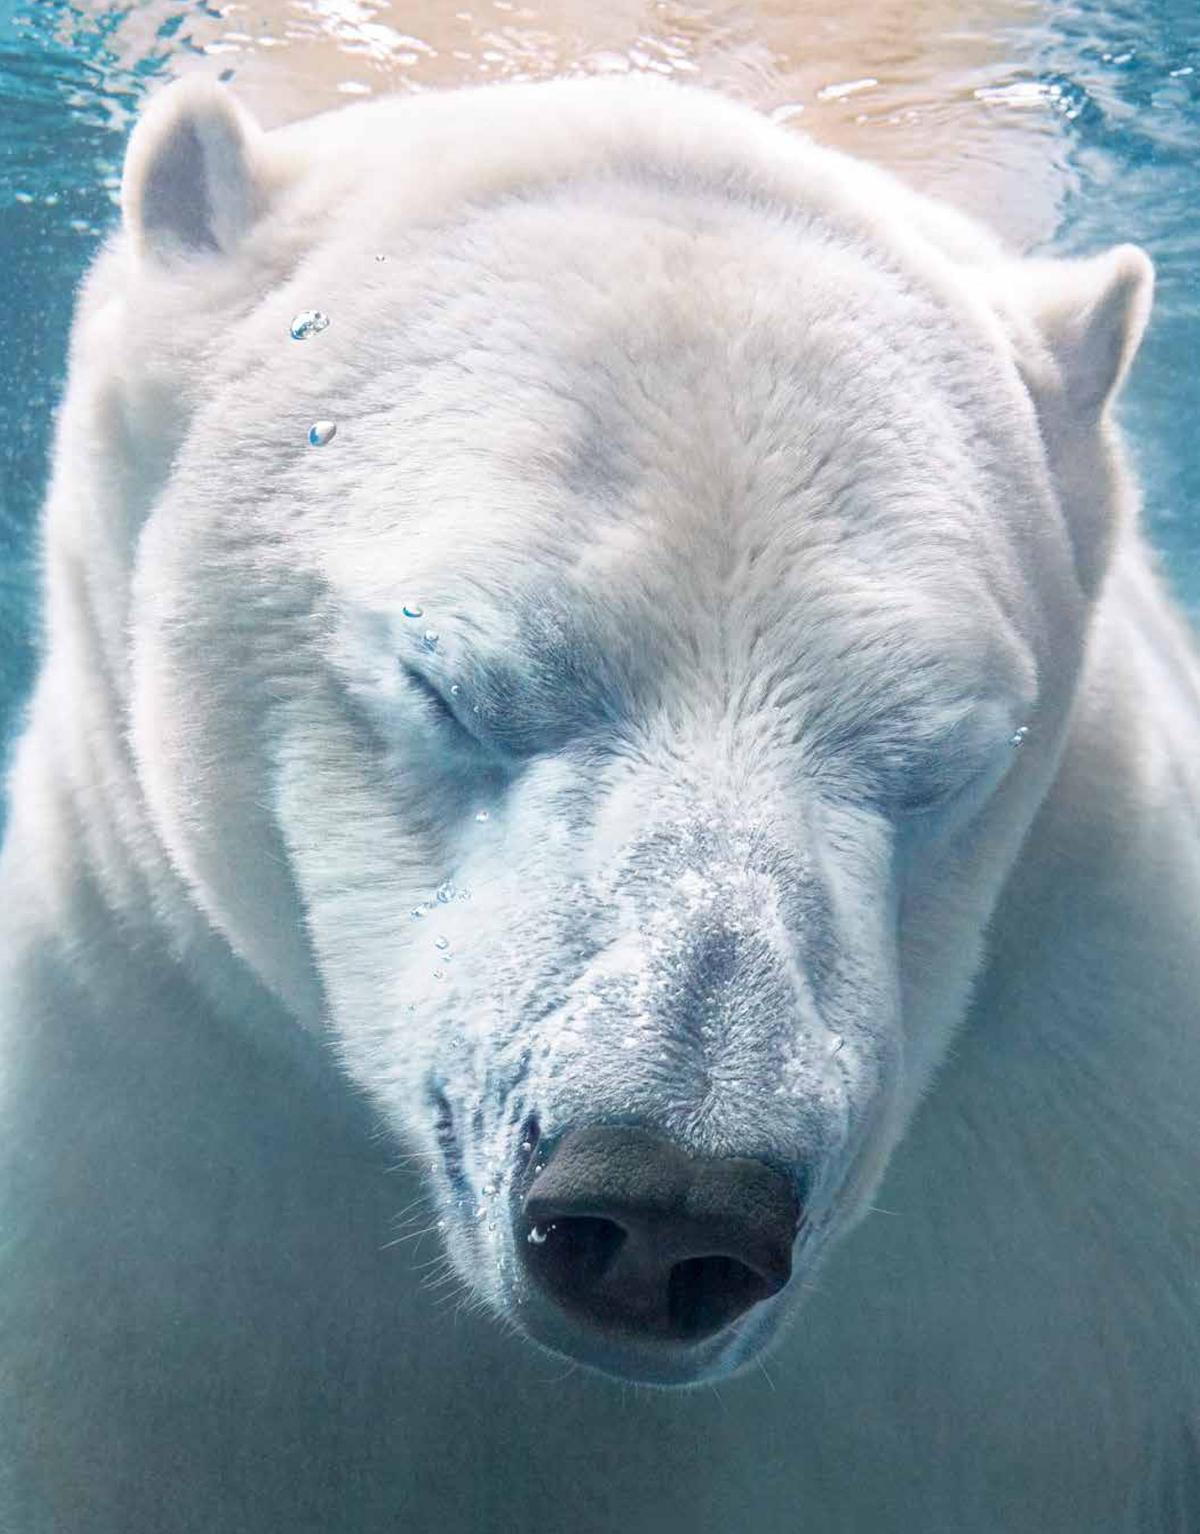 A polar bear swimming. (Courtesy of <a href="https://timflach.com/">Tim Flach</a>)